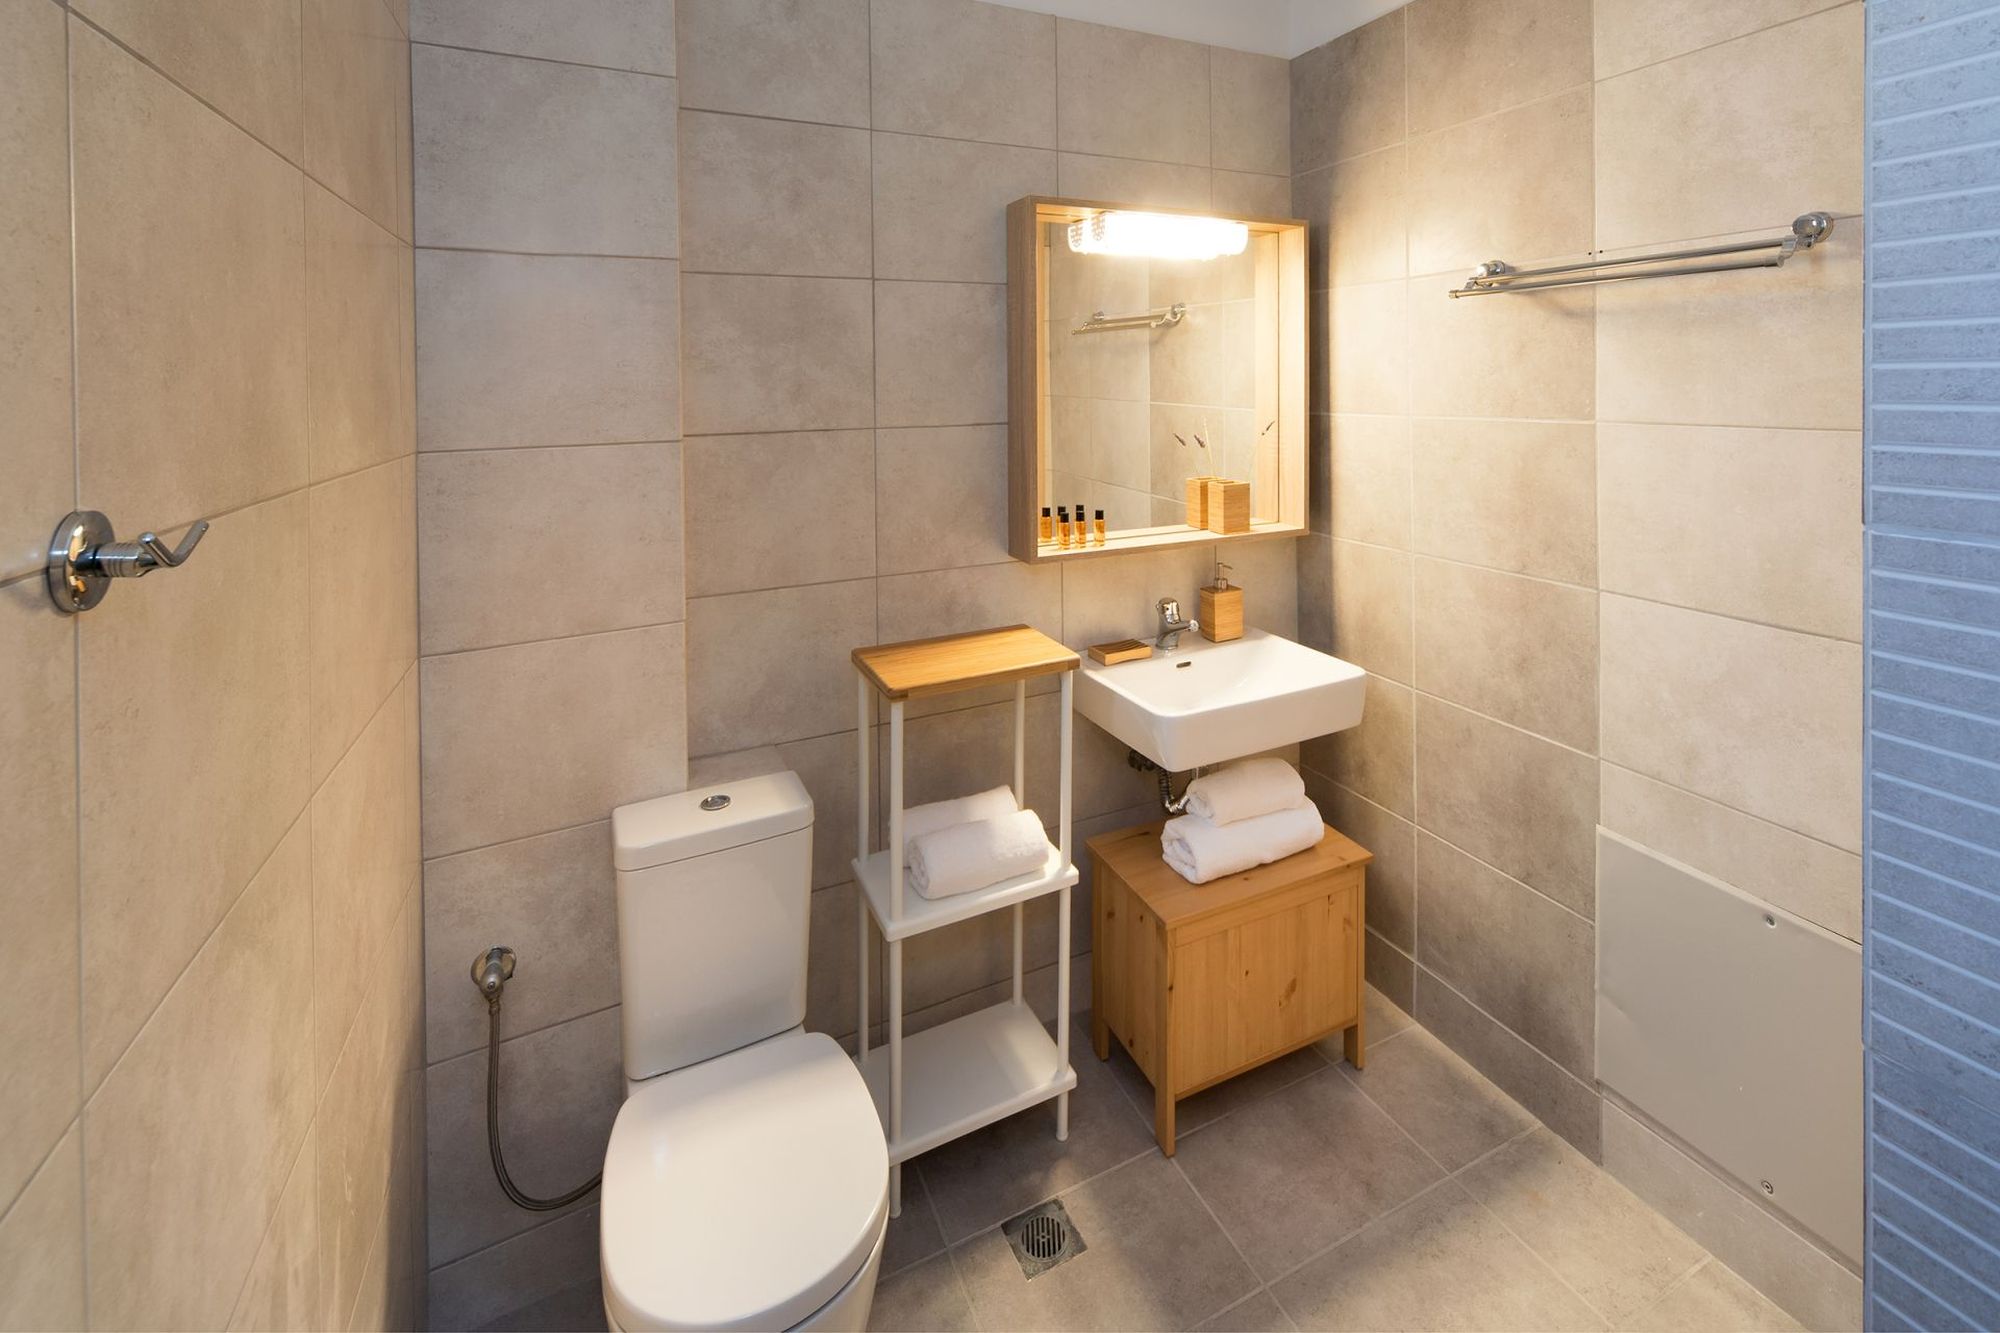 Modern beige bathroom with wooden shelf unit, white washbasin and big wooden mirror.